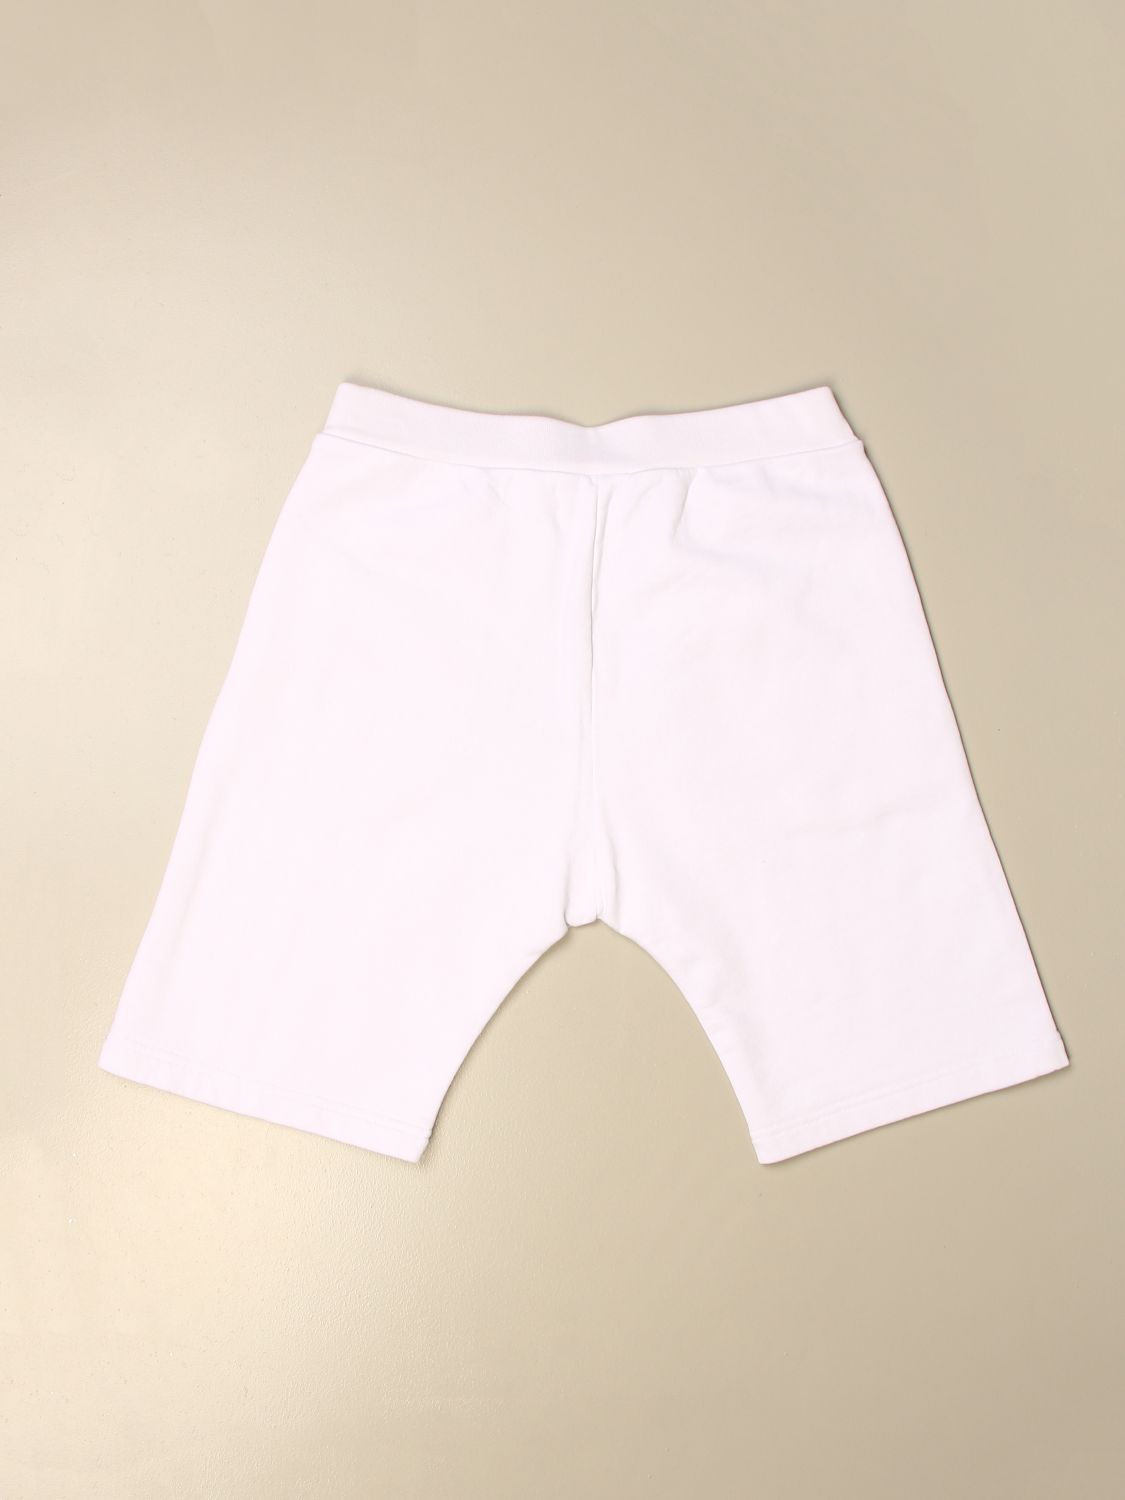 Pantalón corto Dsquared2 Junior: Pantalón corto Dsquared2 Junior para niño blanco 2